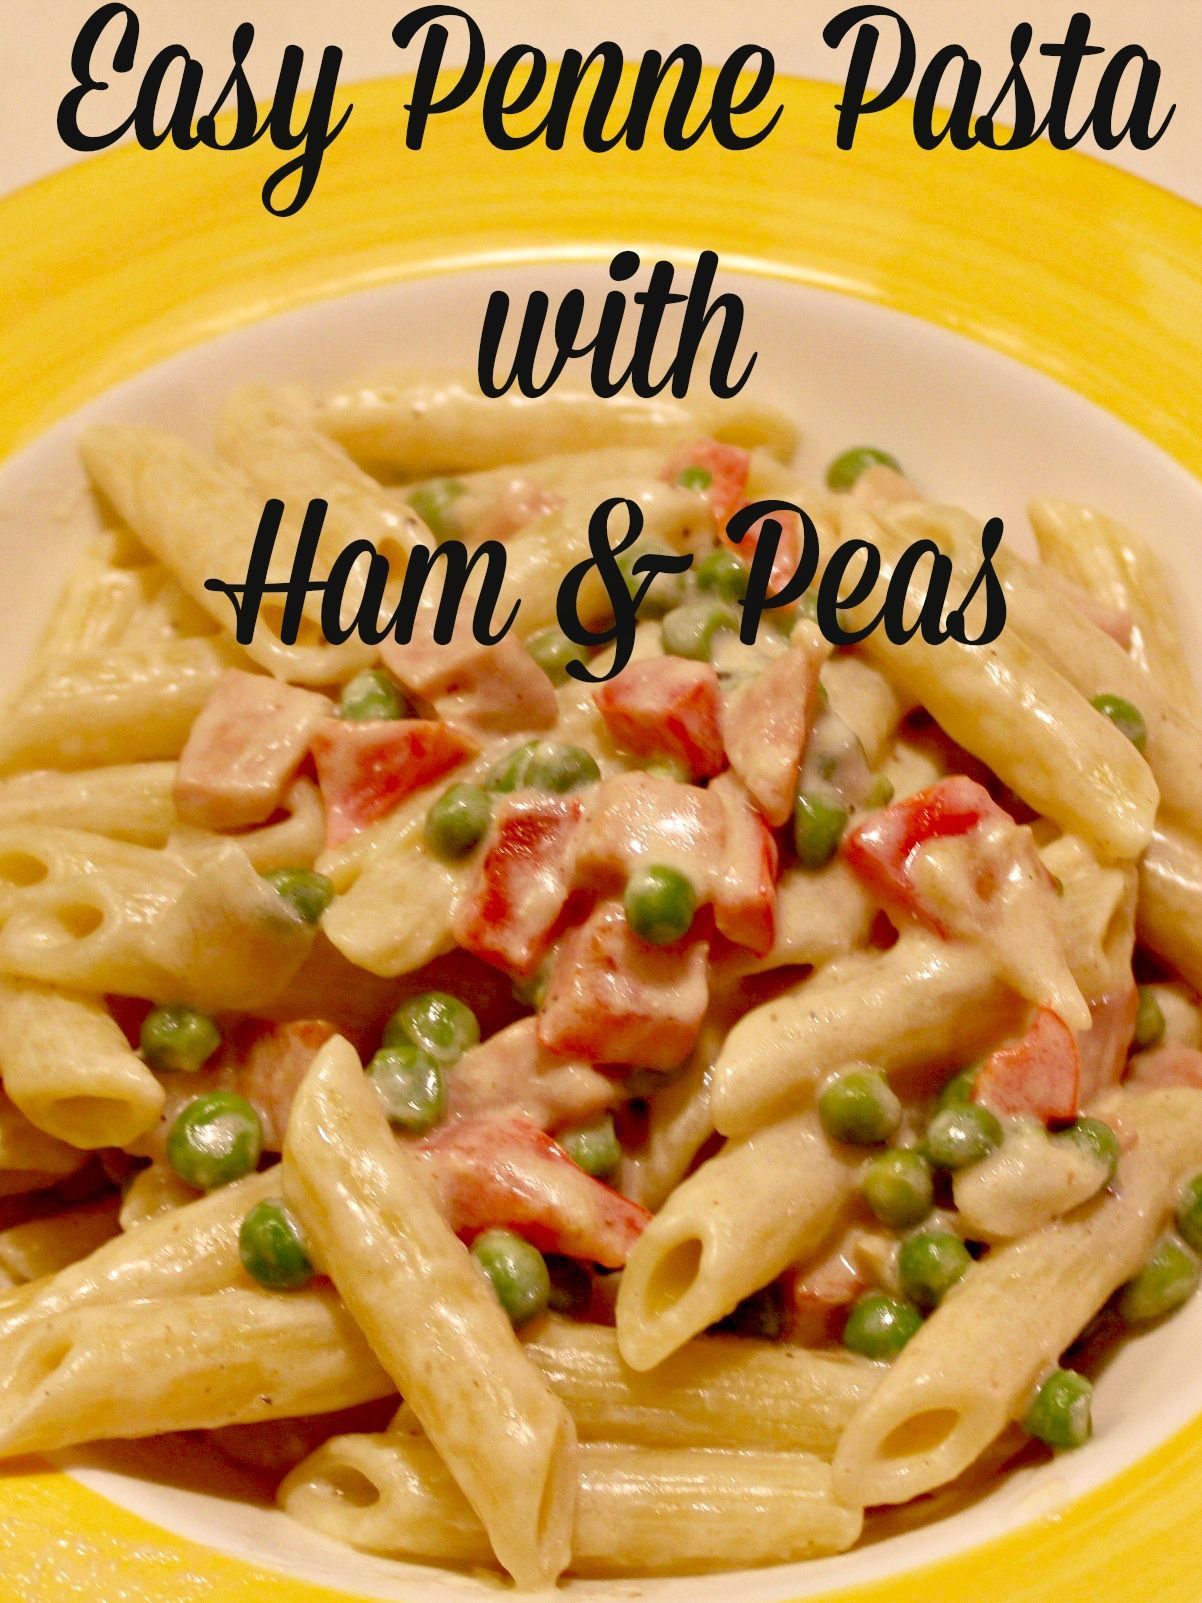 Leftover Ham Recipes Pasta
 Easy Penne Pasta with Ham & Peas